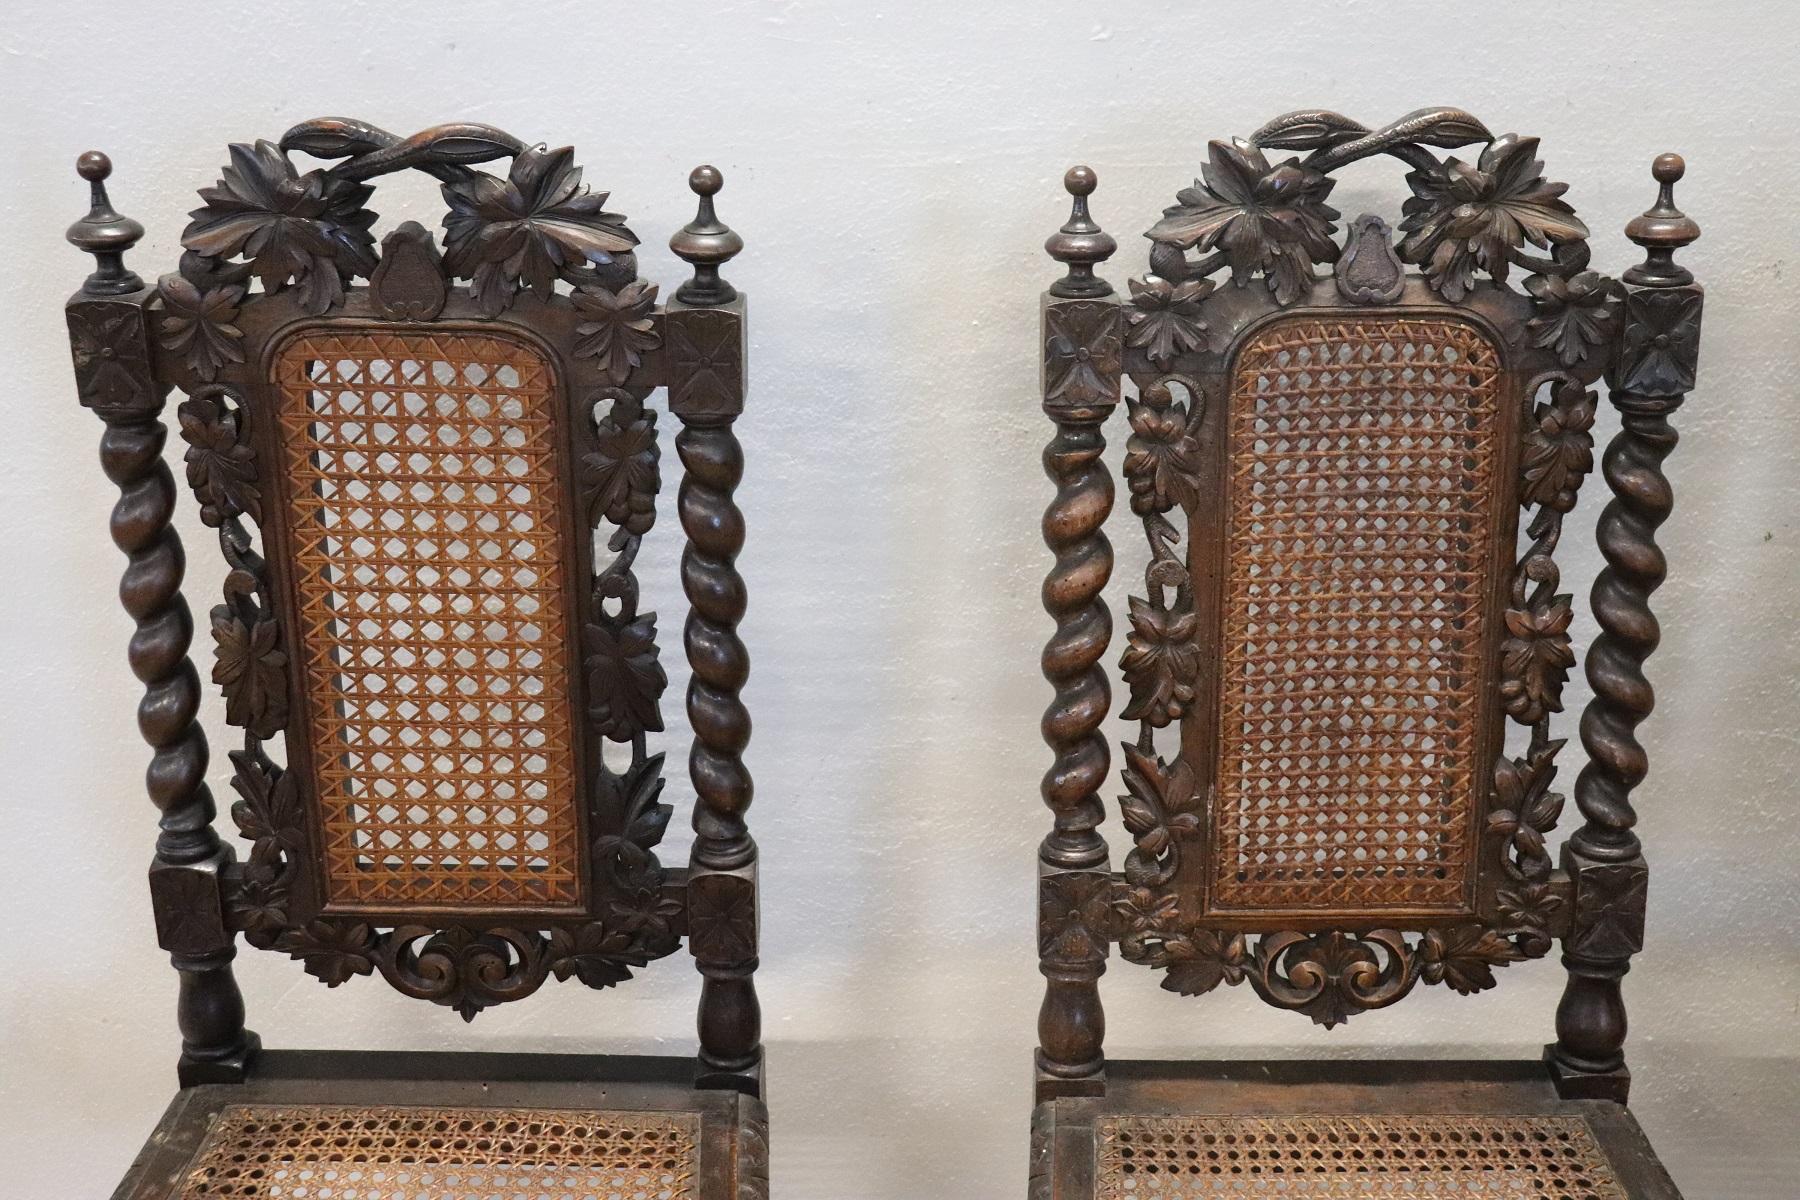 Très rare série de quatre chaises de salle à manger production d'ébénistes italiens en style renaissance, 1880. Belle ligne avec des jambes tournées. Le dossier de ces chaises est haut et comporte un décor en noyer richement sculpté. La paille